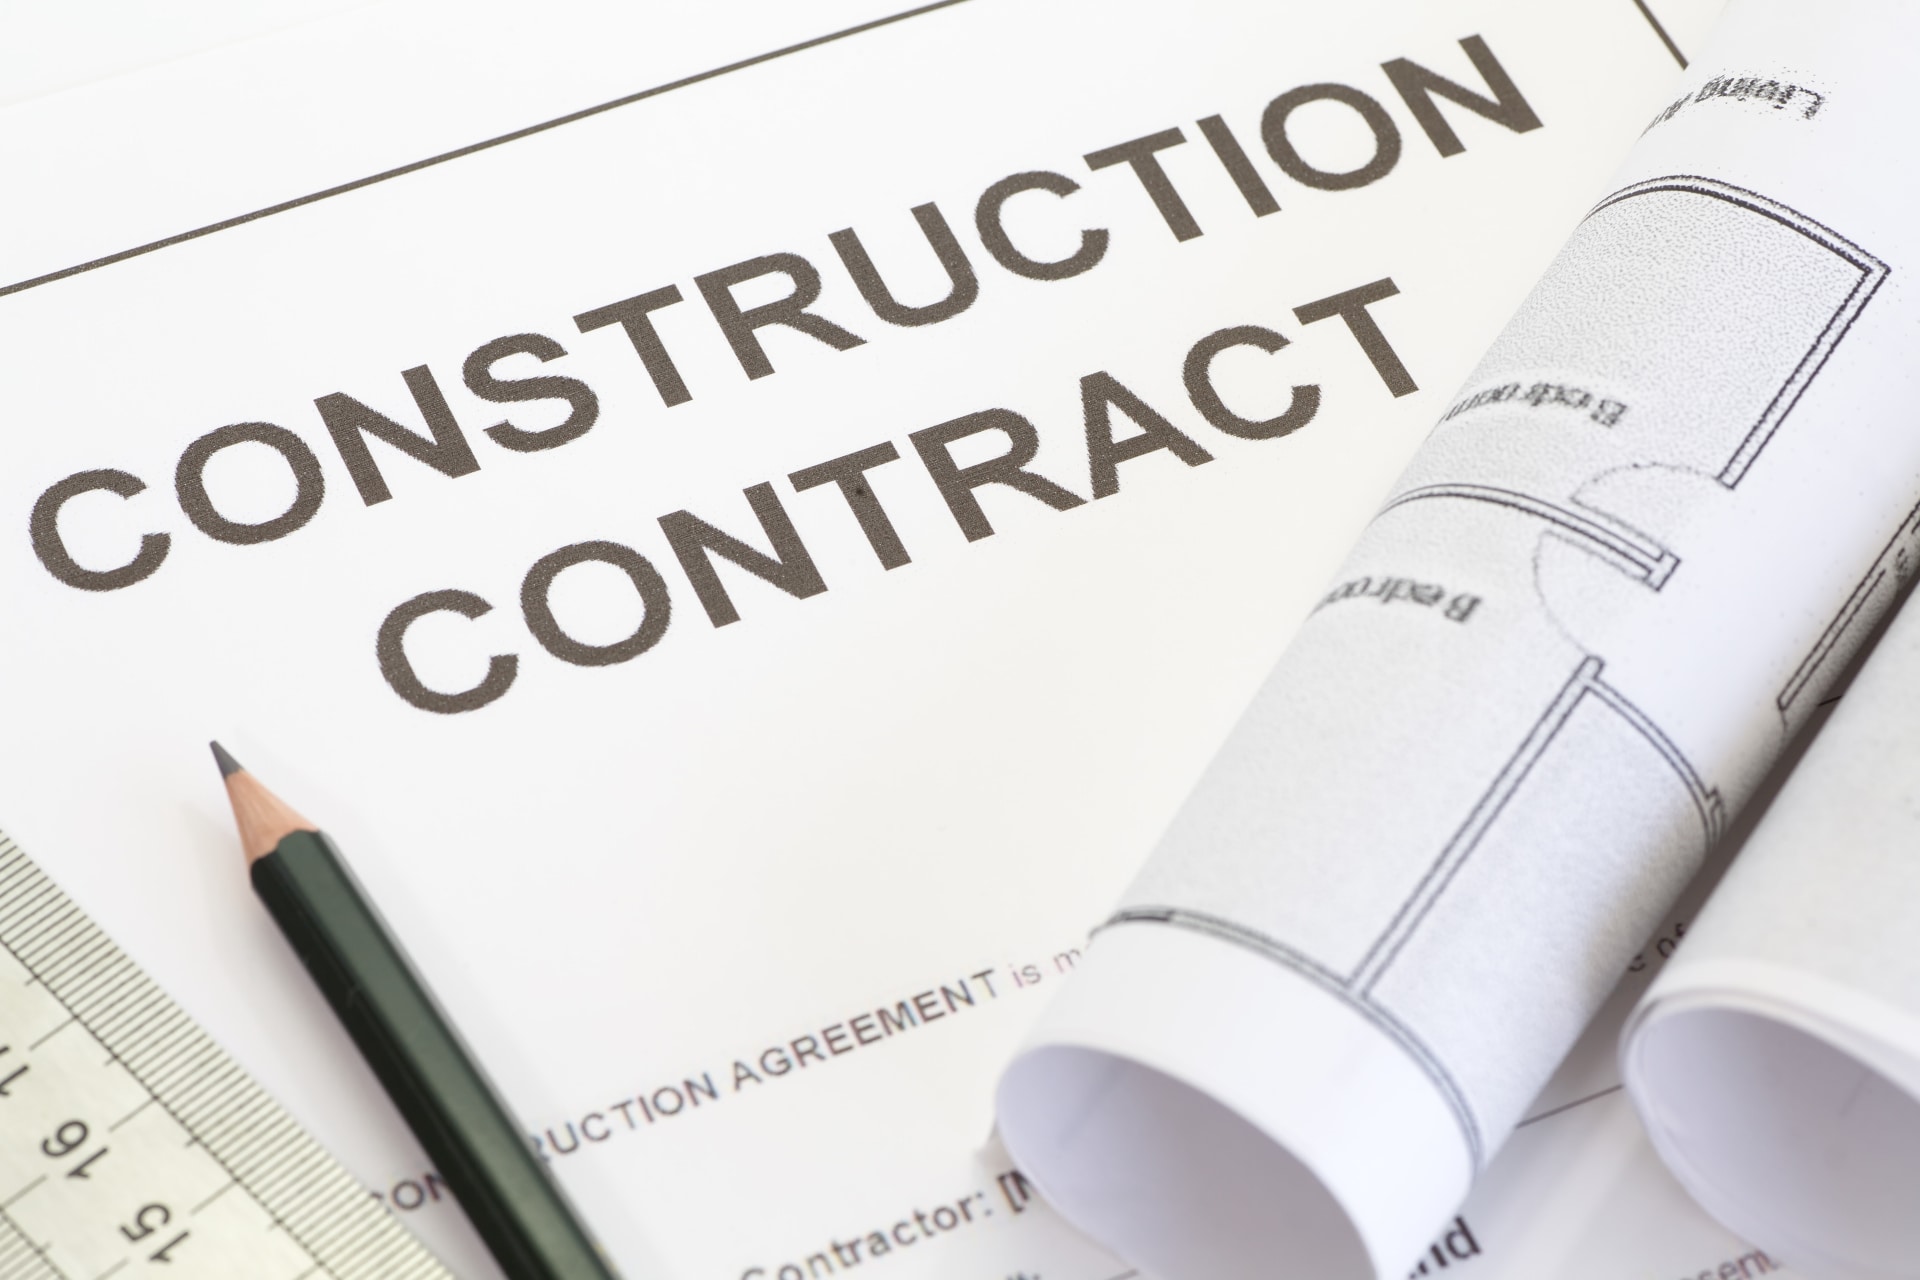 Prospective Contractors and Vendors